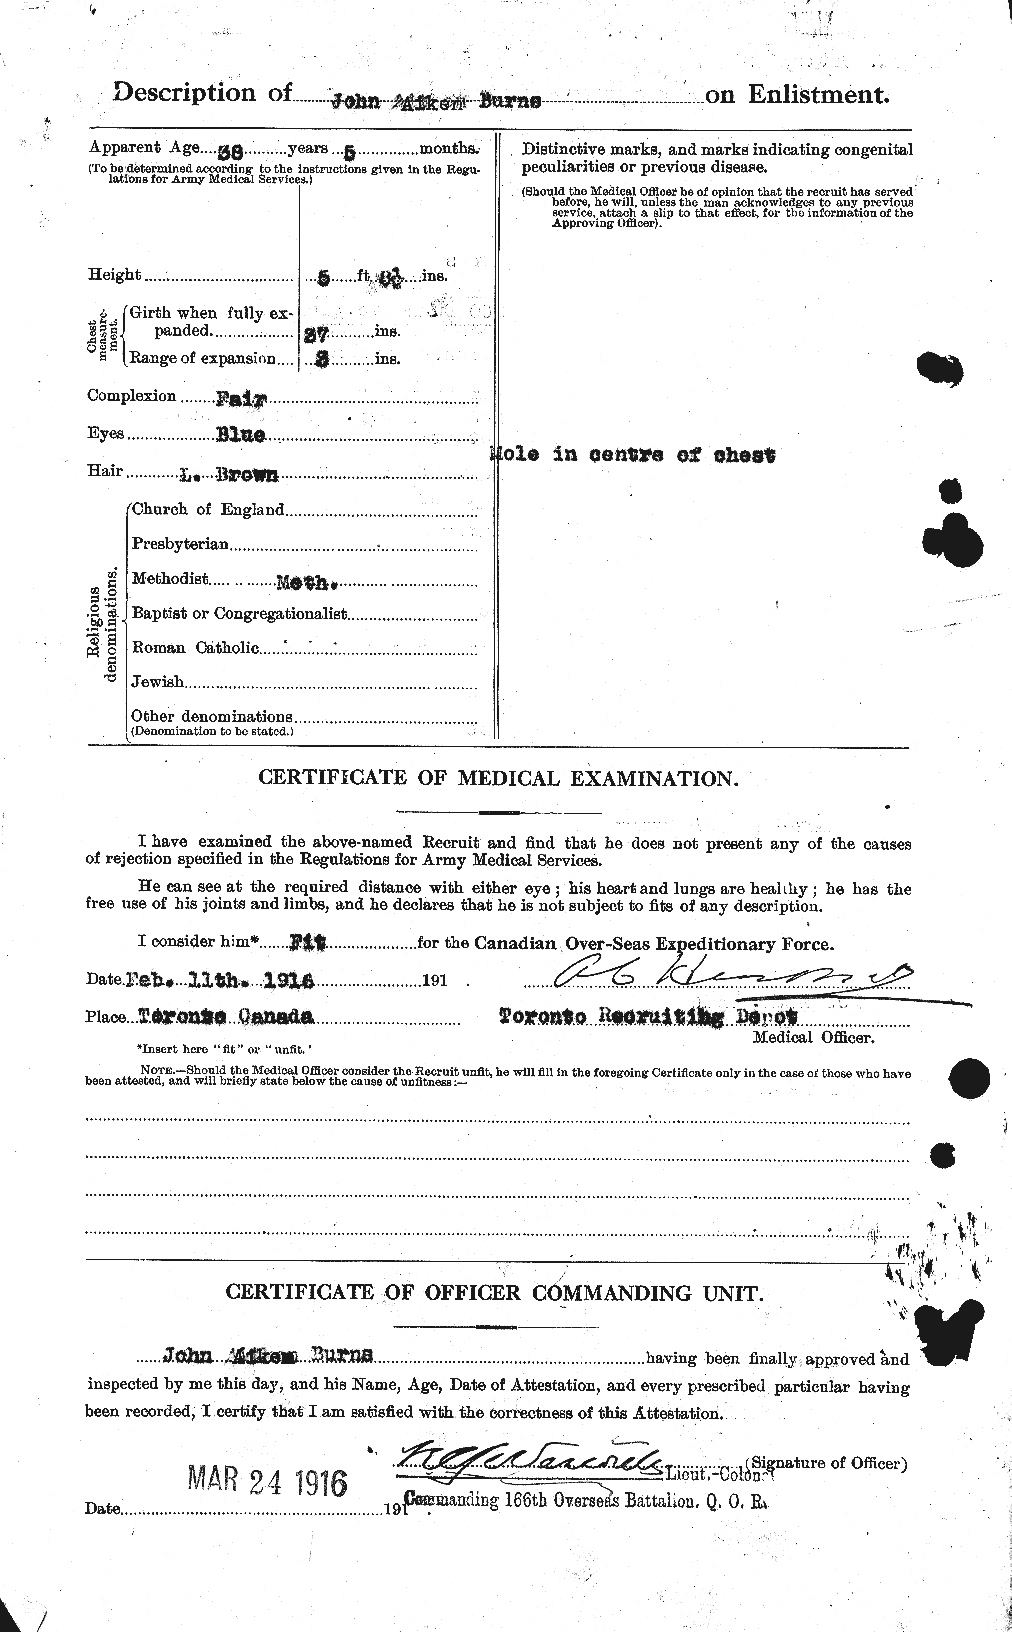 Dossiers du Personnel de la Première Guerre mondiale - CEC 274287b